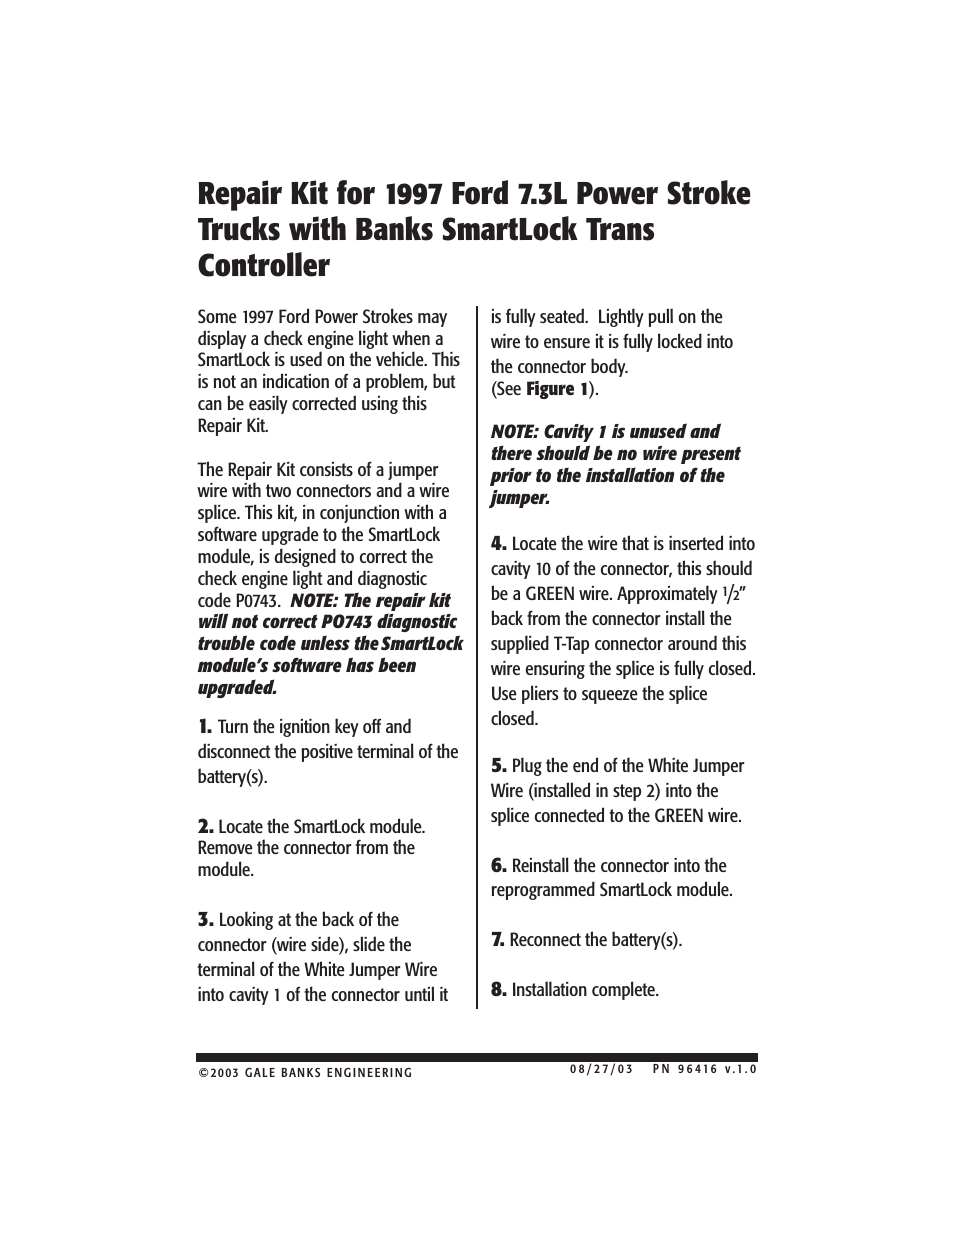 Ford Trucks: (Diesel ’94 - 97 7.3L Power Stroke) Speed Control- Repair Kit, SmartLock ('97 models only)